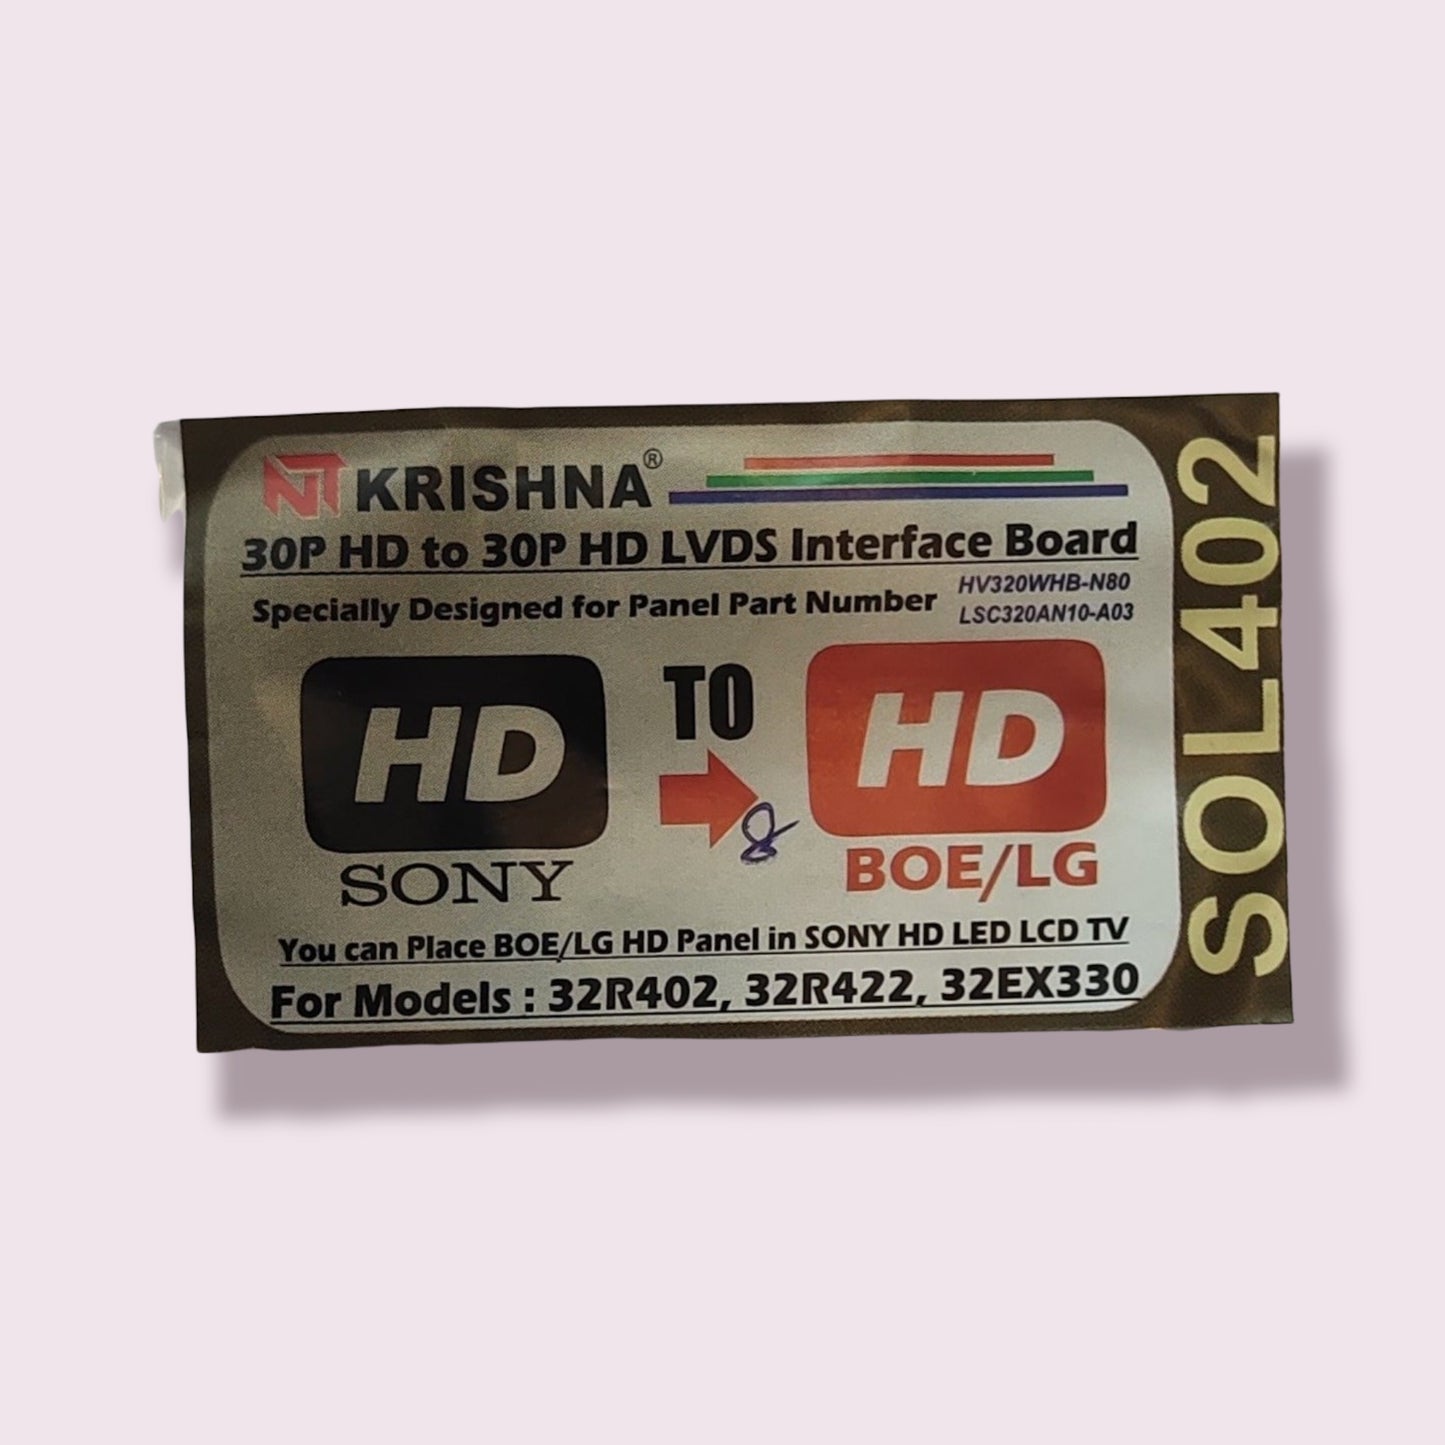 Sony to BOE/LG HD to HD 30P HD to 30P HD LVDS Interface Board SOL402 - Faritha